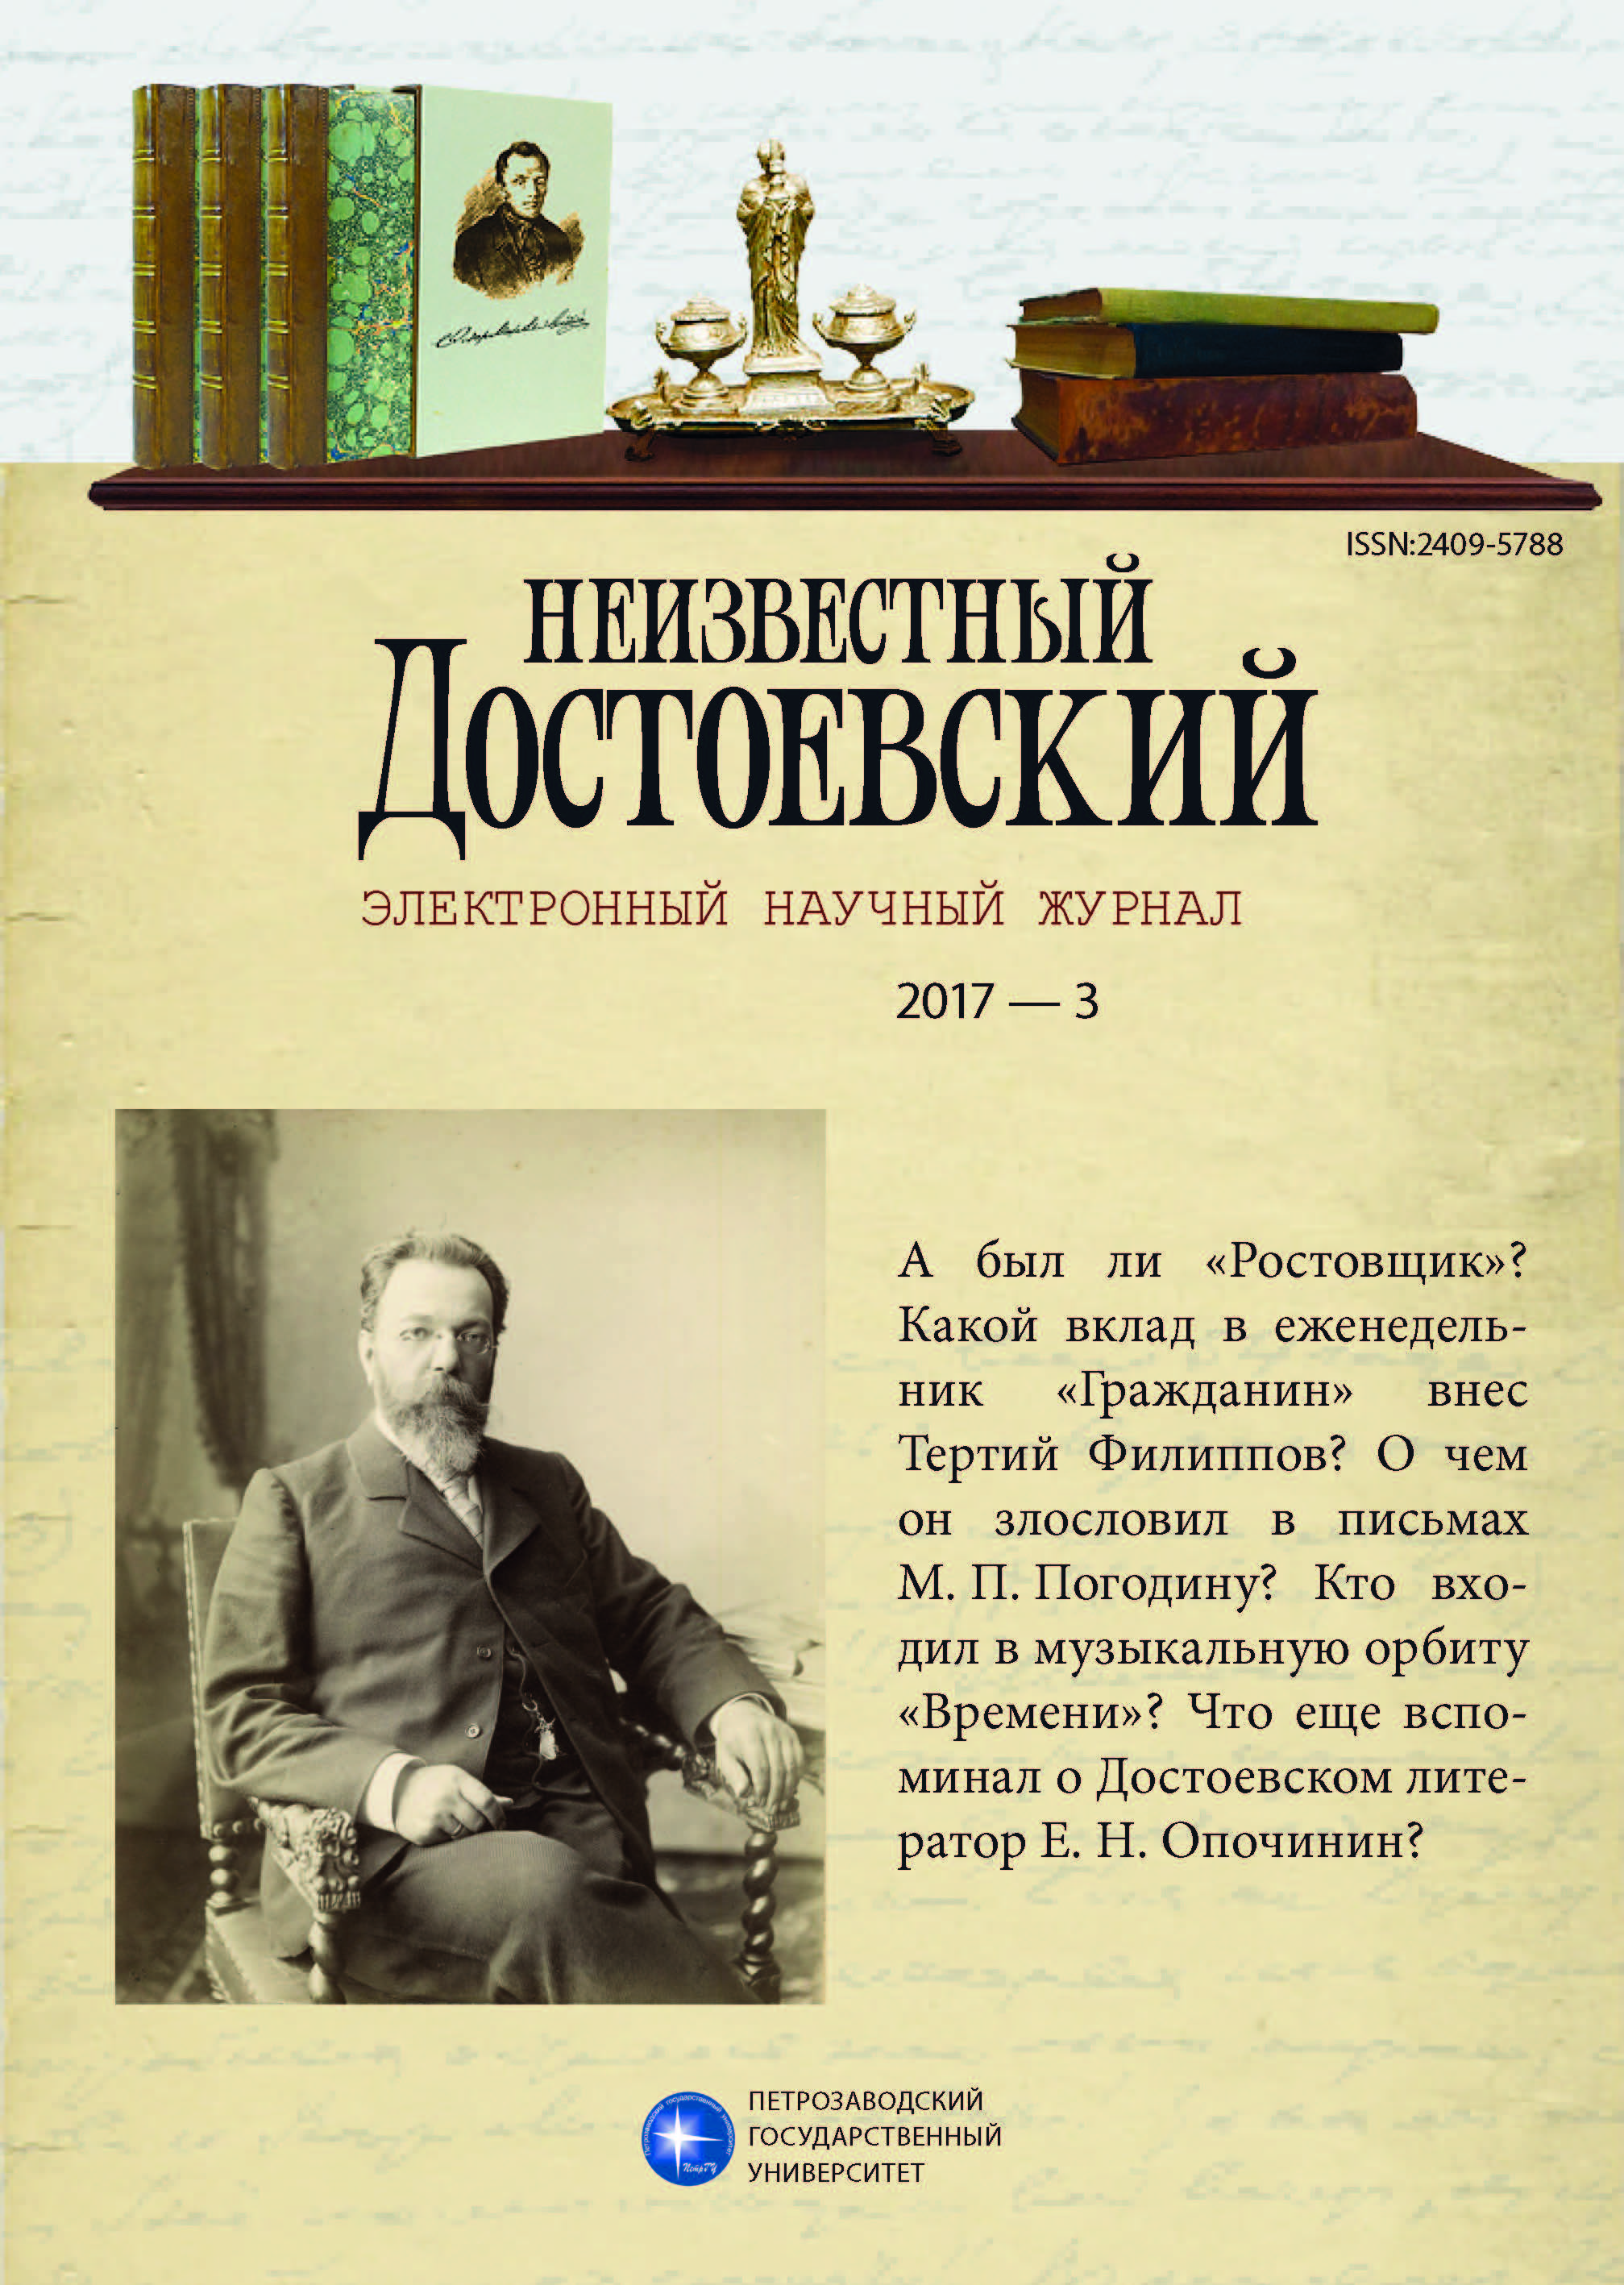 Был ли у Достоевского неосуществленный замысел под названием "Ростовщик"?